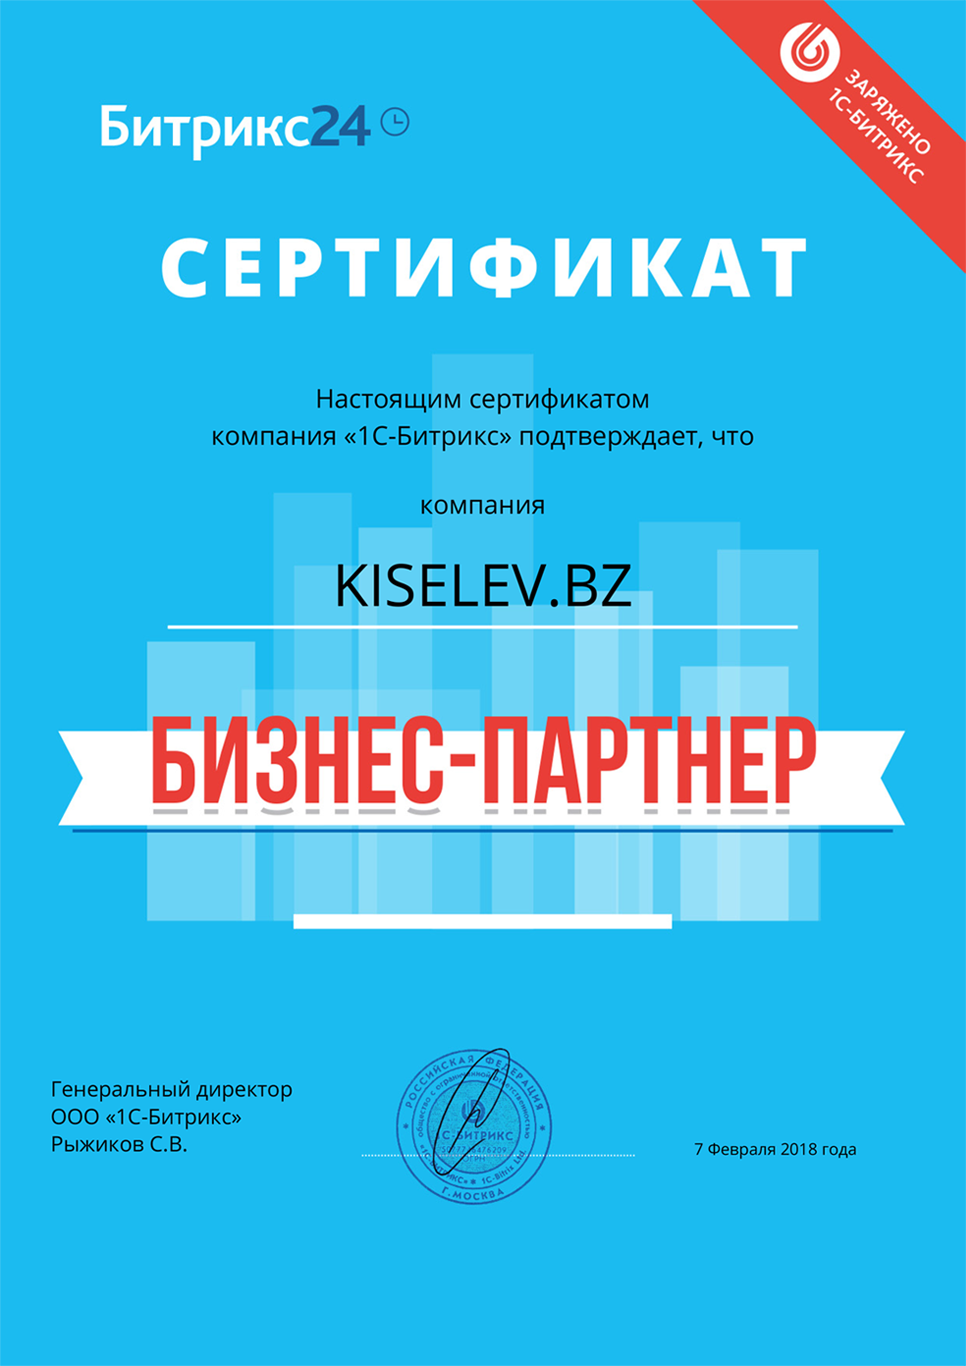 Сертификат партнёра по АМОСРМ в Дигоре